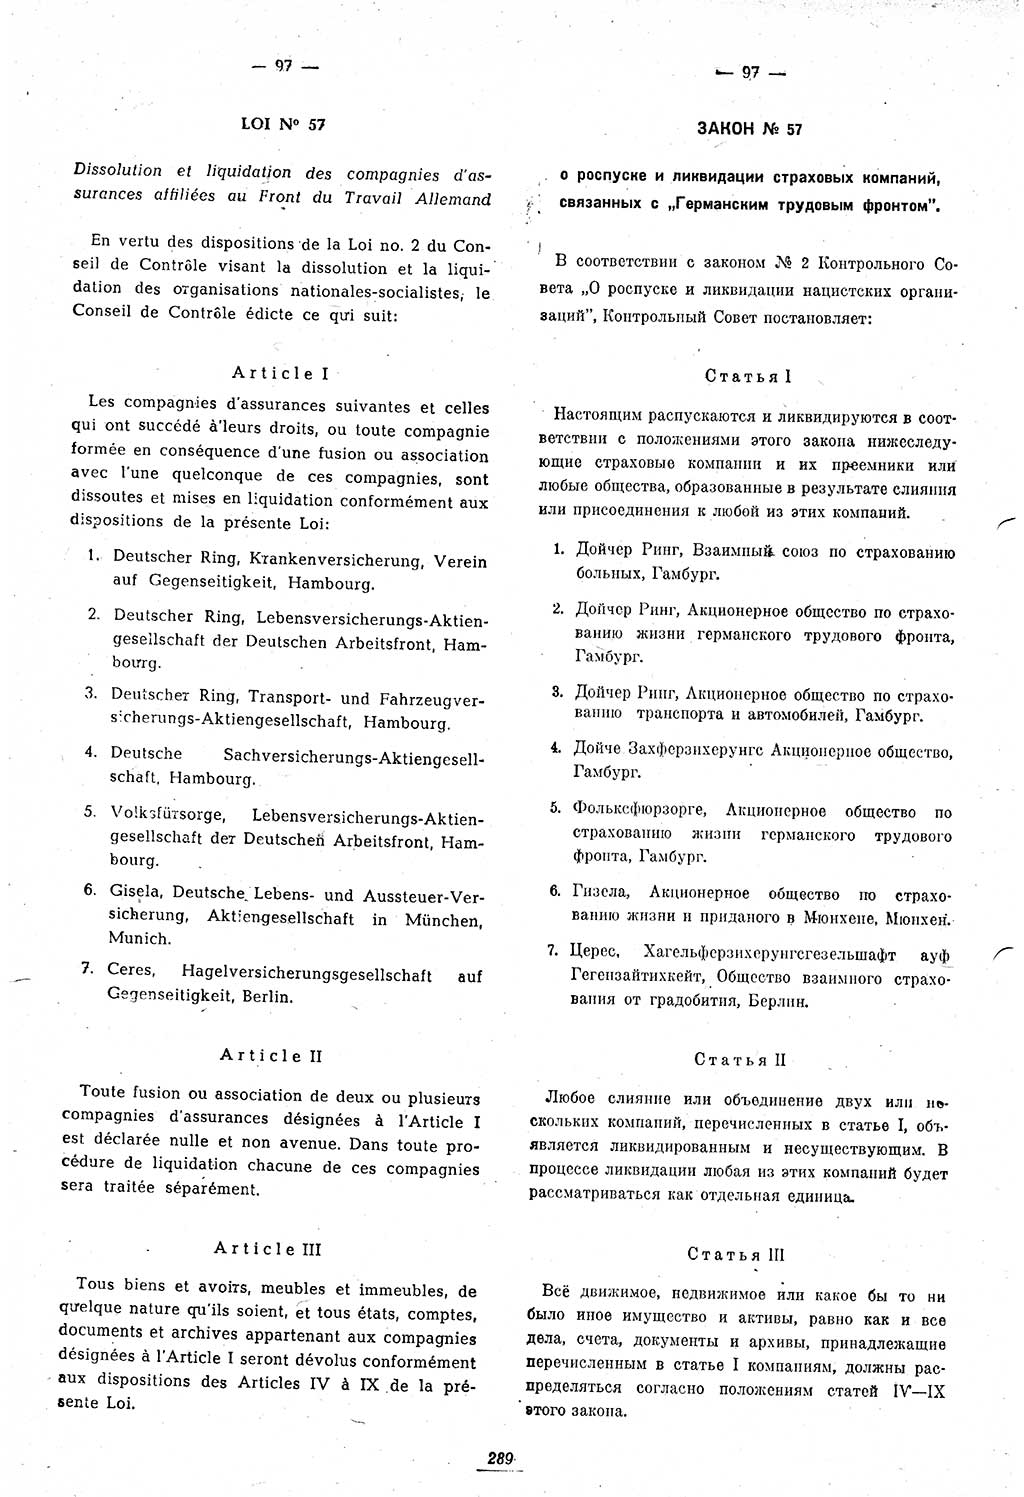 Amtsblatt des Kontrollrats (ABlKR) in Deutschland 1947, Seite 289/1 (ABlKR Dtl. 1947, S. 289/1)